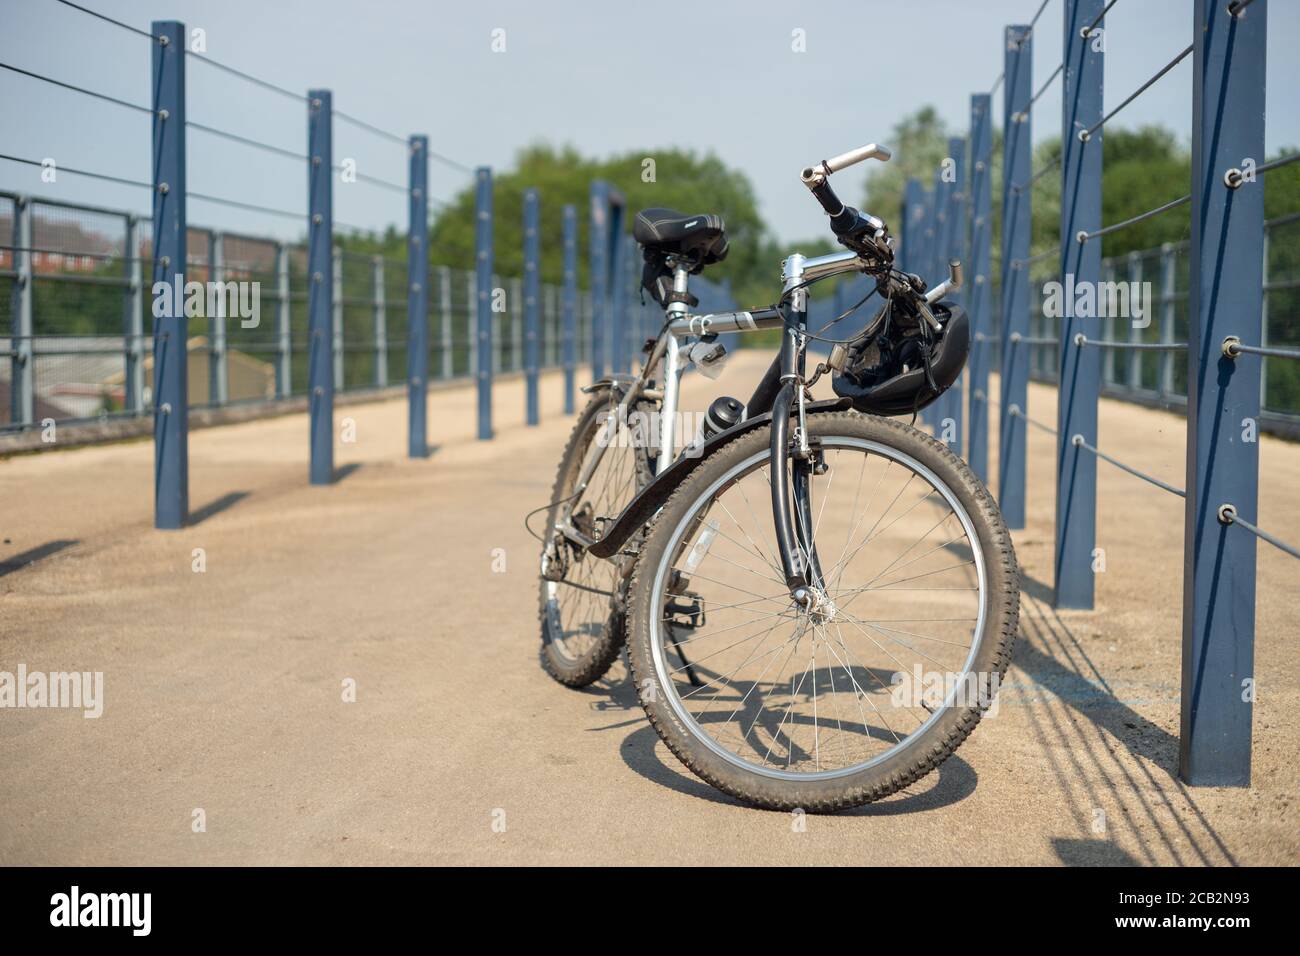 Vélo argenté ou vélo sur une piste cyclable au-dessus d'un pont à Radcliffe, Manchester Royaume-Uni. Gardez la forme, l'extérieur, le vélo, l'activité, la santé, le bien-être, l'exercice Banque D'Images